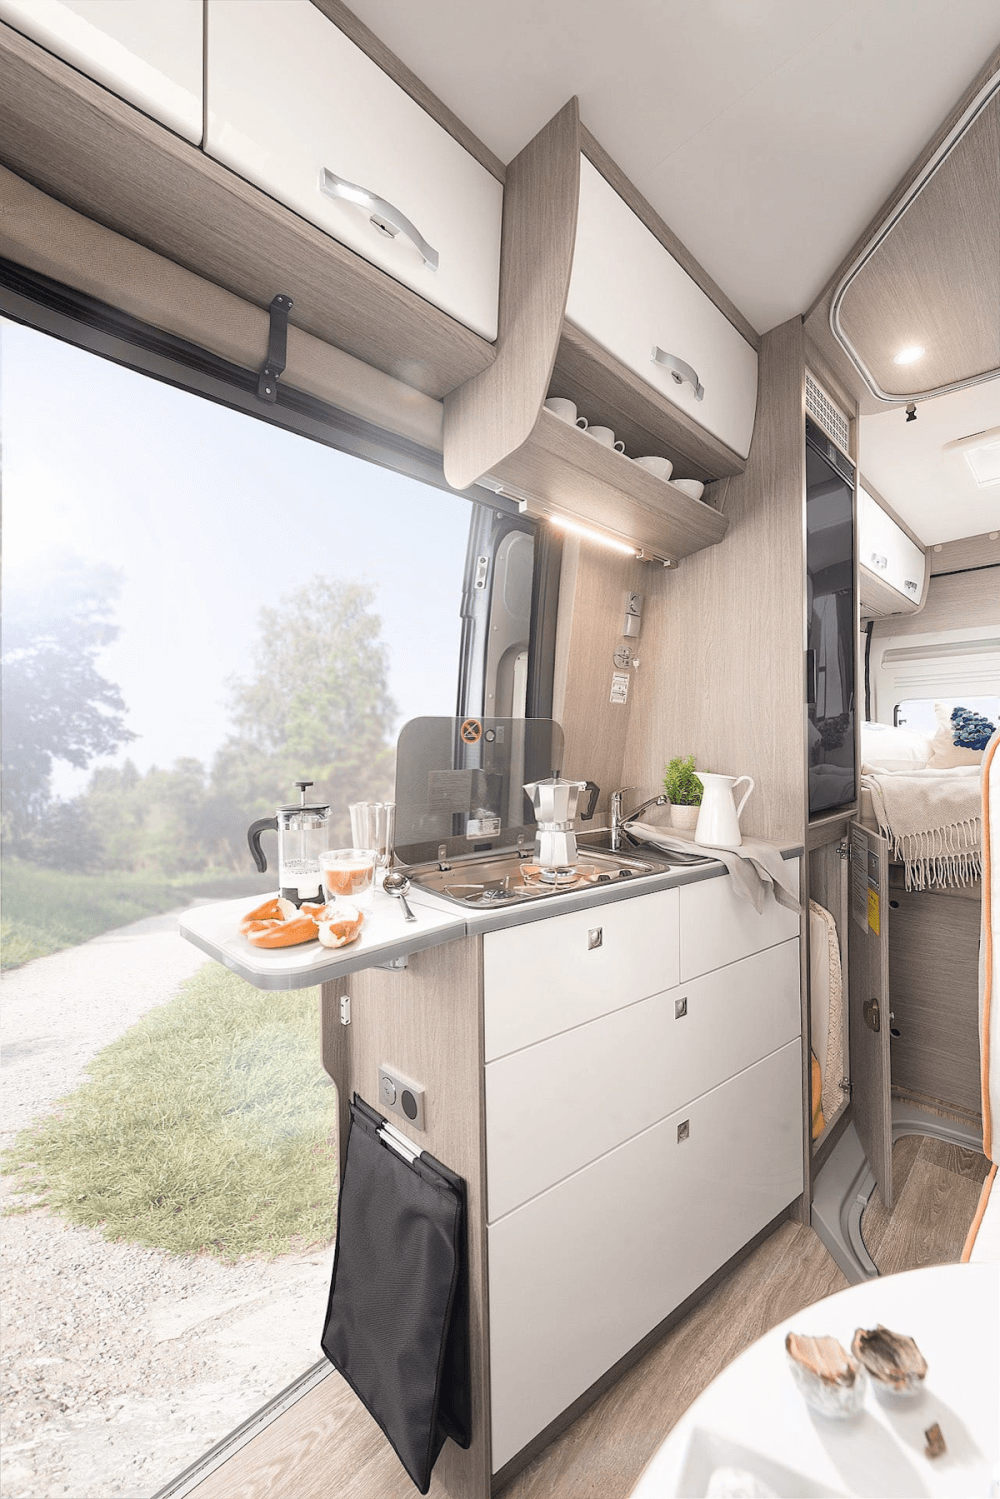 Pössl Roadcruiser Revolution 640 (Citroen) Kastenwagen 2021 Küche